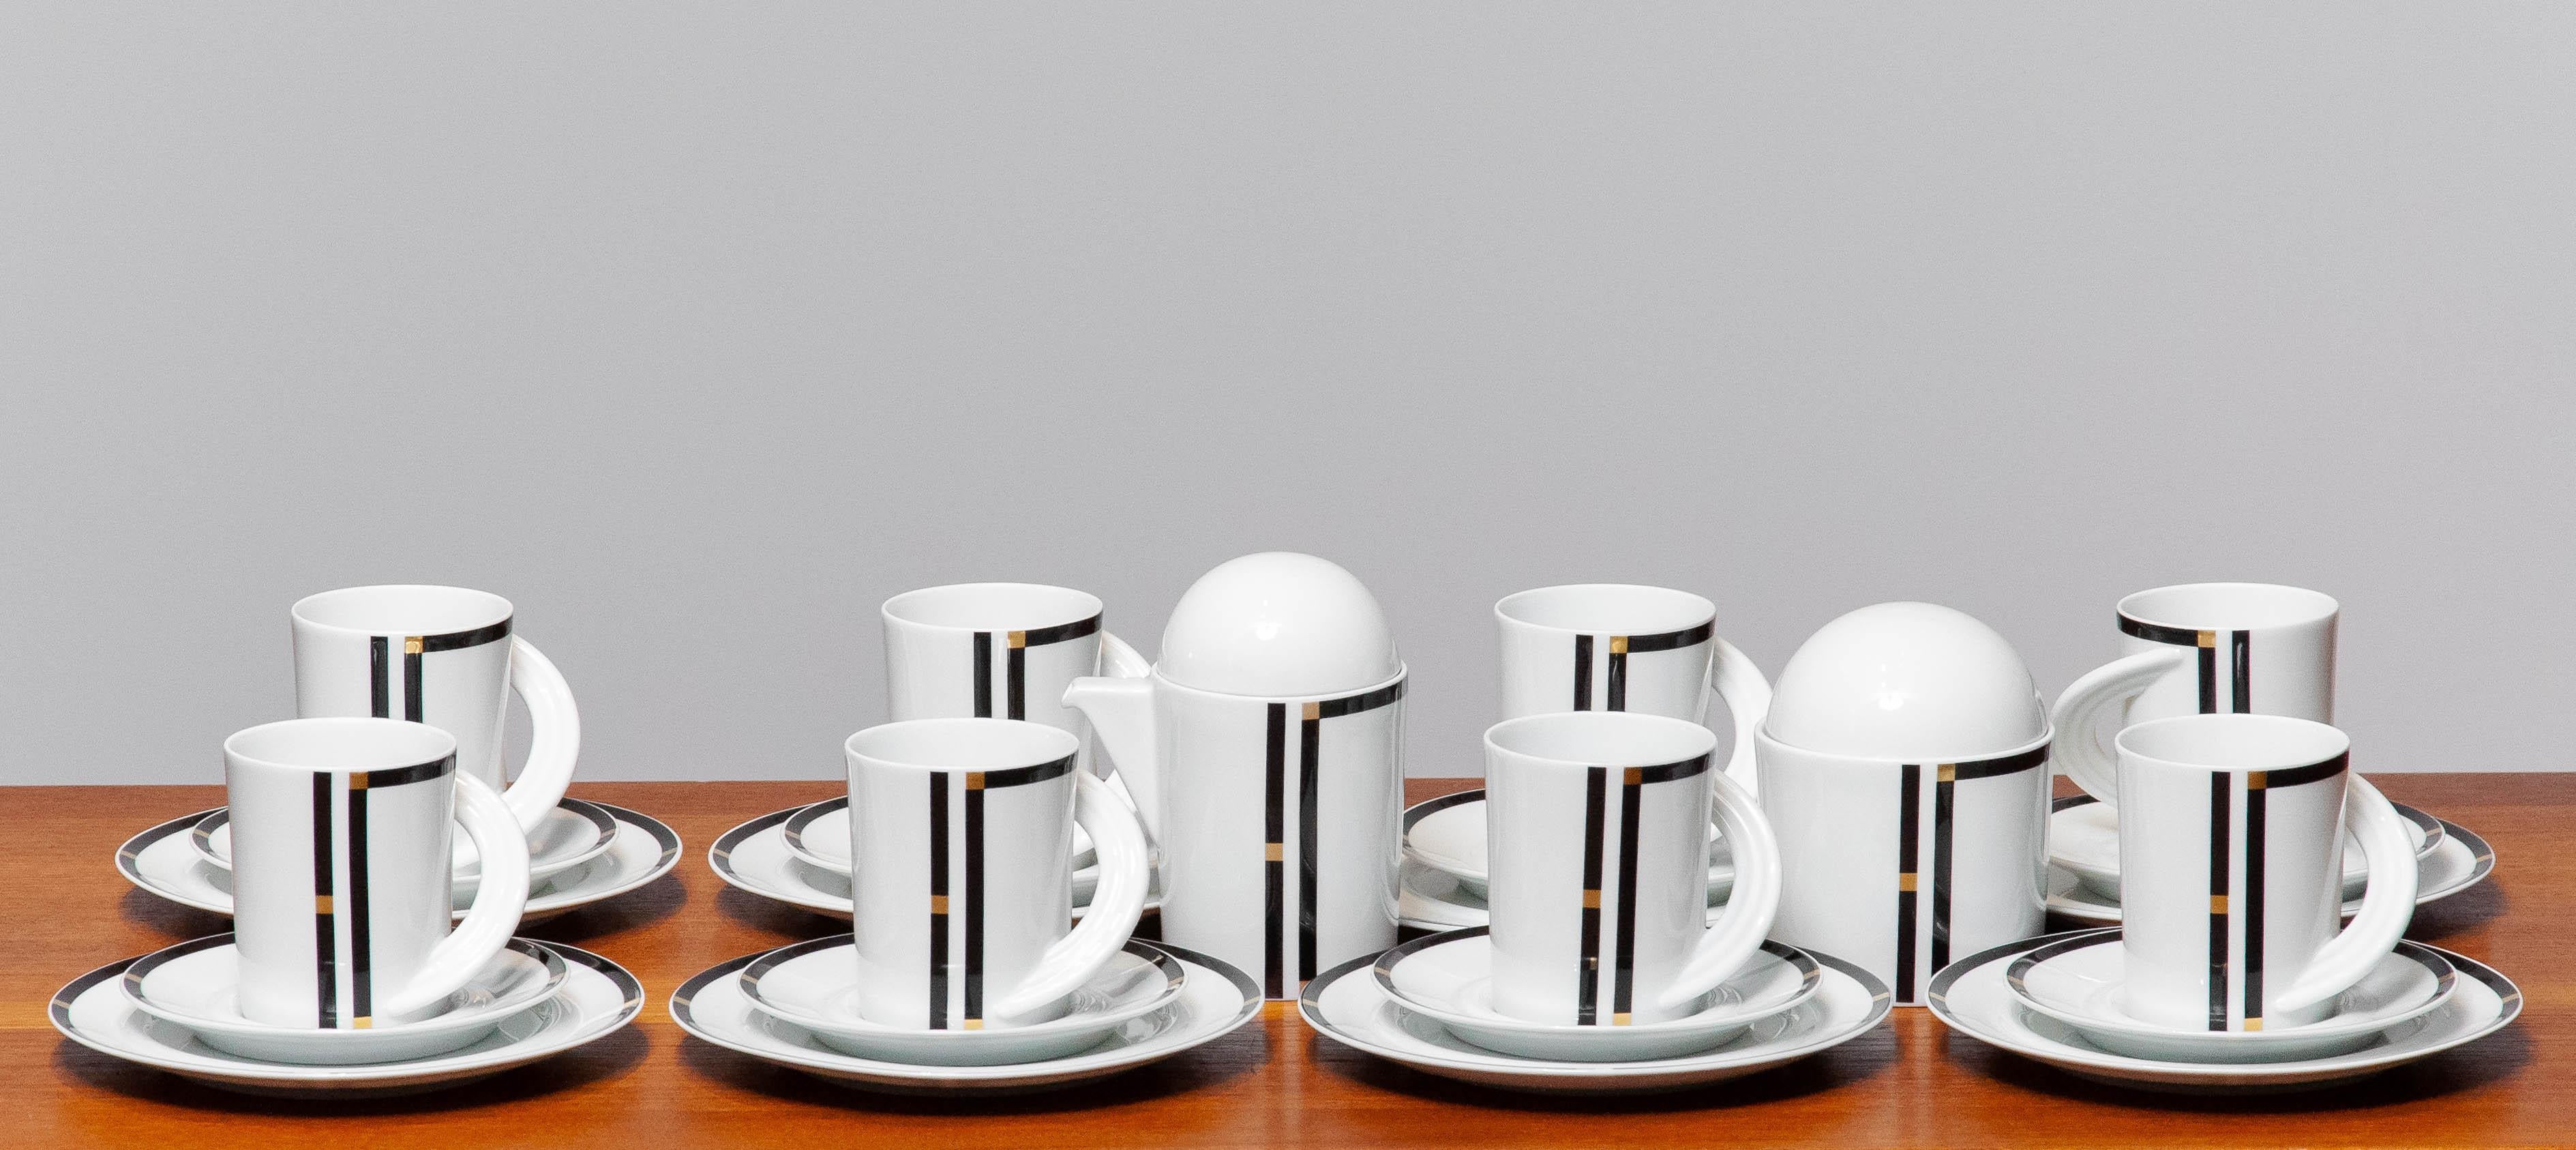 Wunderschönes Porzellan Tee-/Kaffeeset aus der Serie 'Studio Linie' von Rosenthal Deutschland, entworfen von Mario Bellini.
Dieses Tee-/Kaffeeset ist für acht Personen gedacht und heißt 'Cupola Nera'.
Art-Déco-Stil.
Das komplette Set ist in